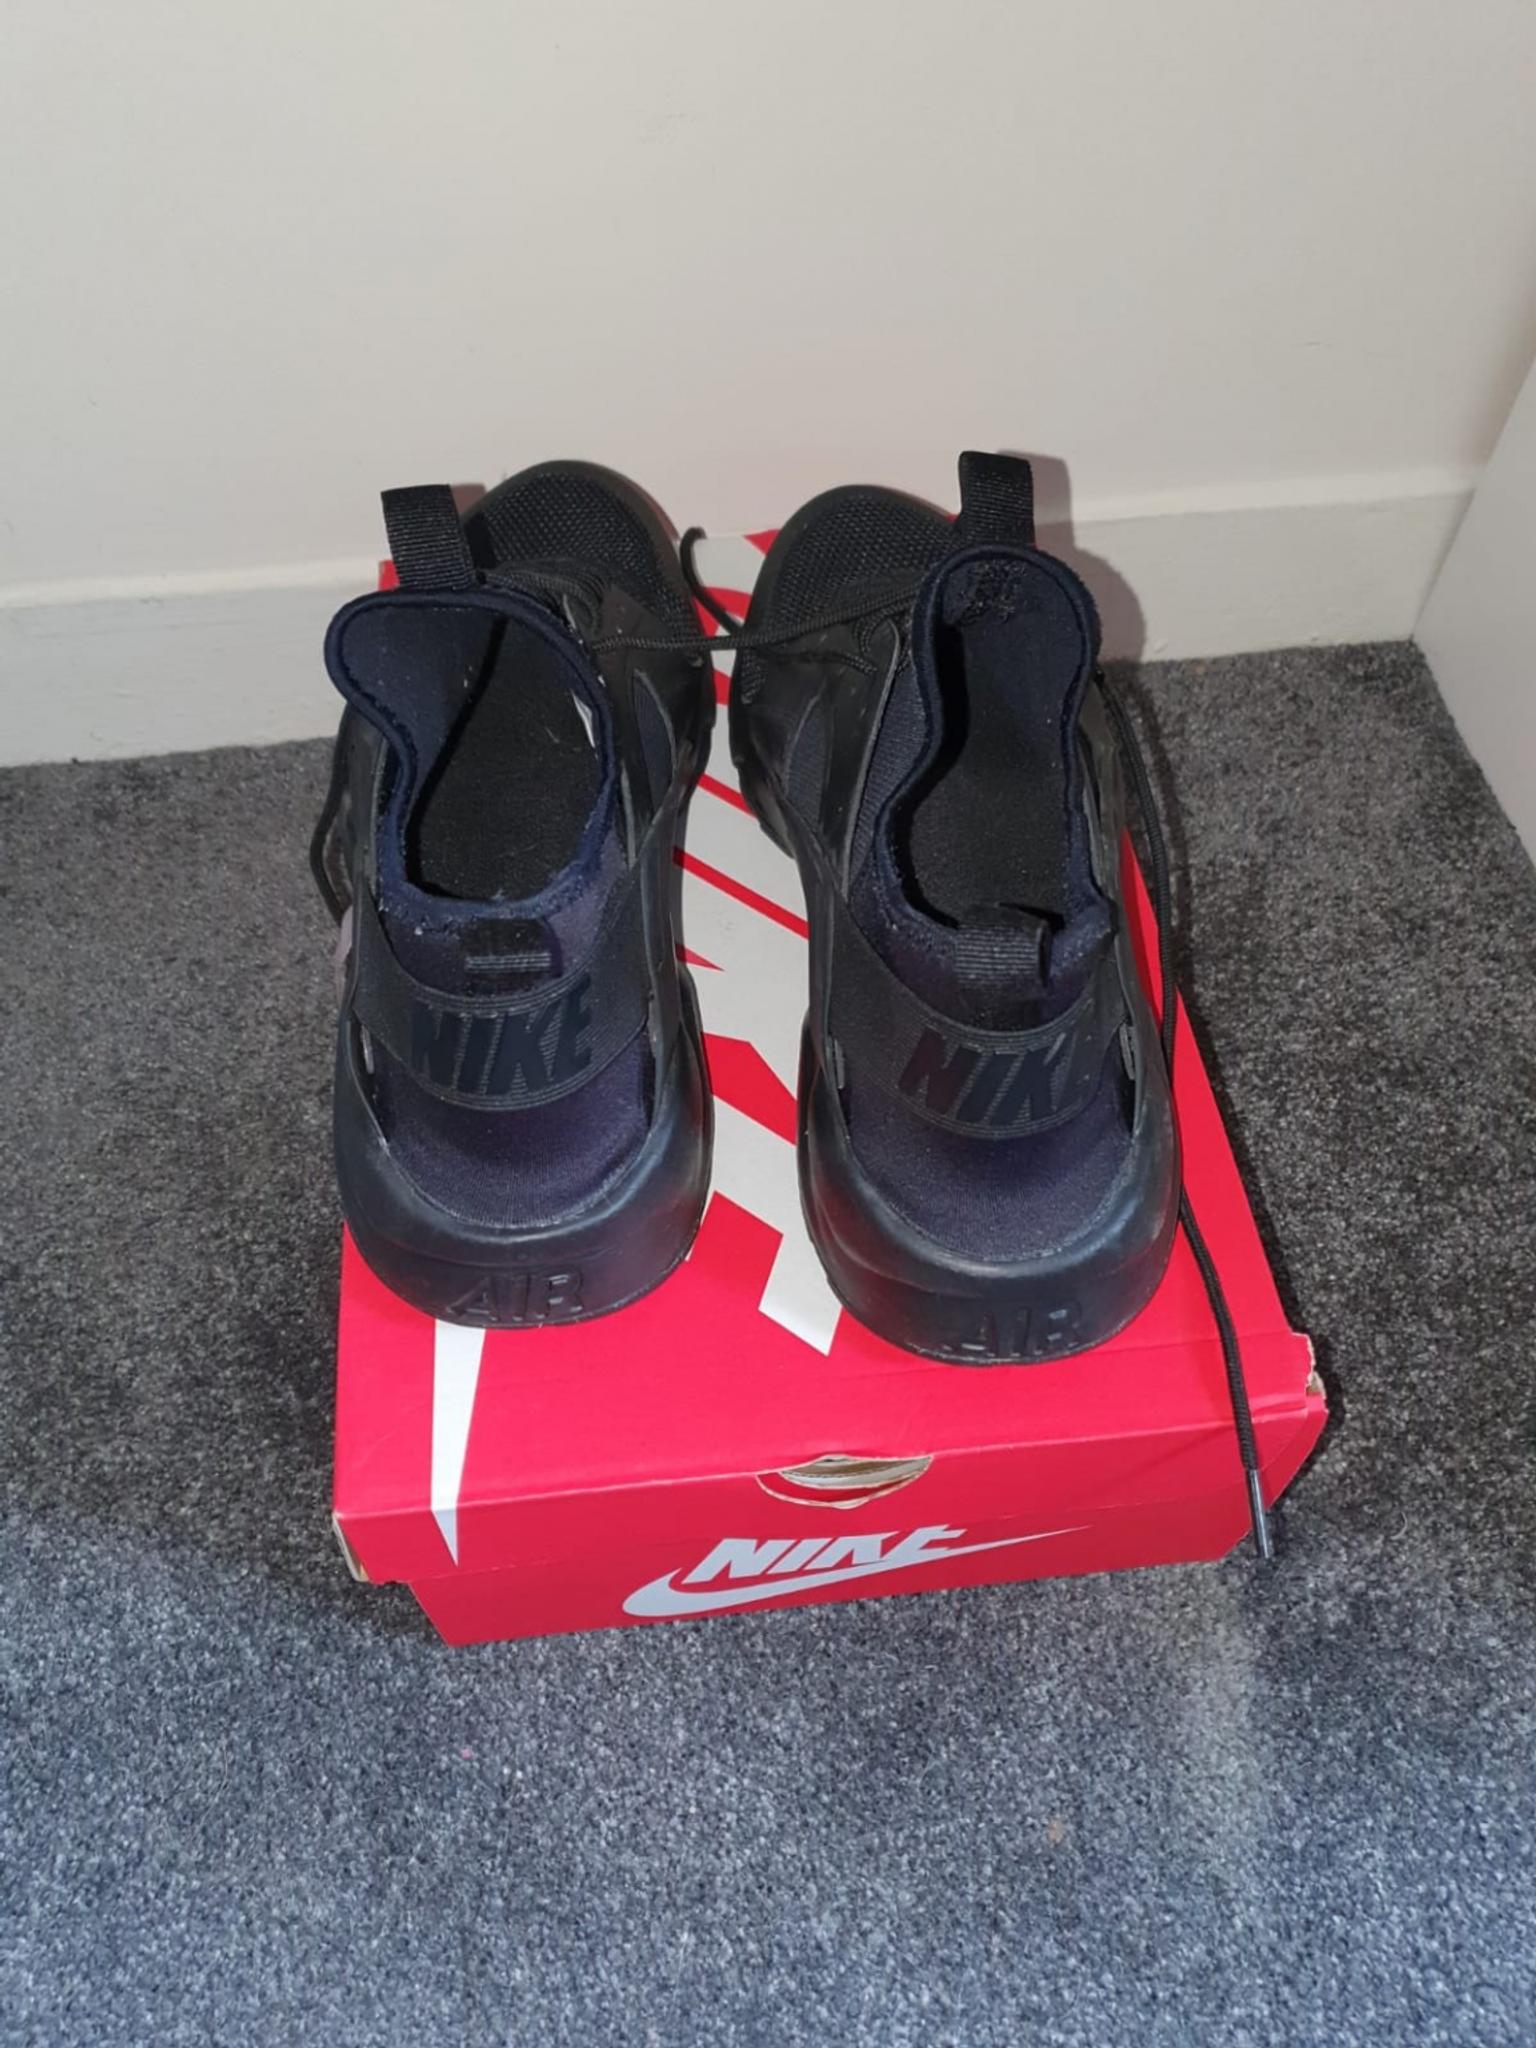 Mens UK size 9 black Nike Huarache 